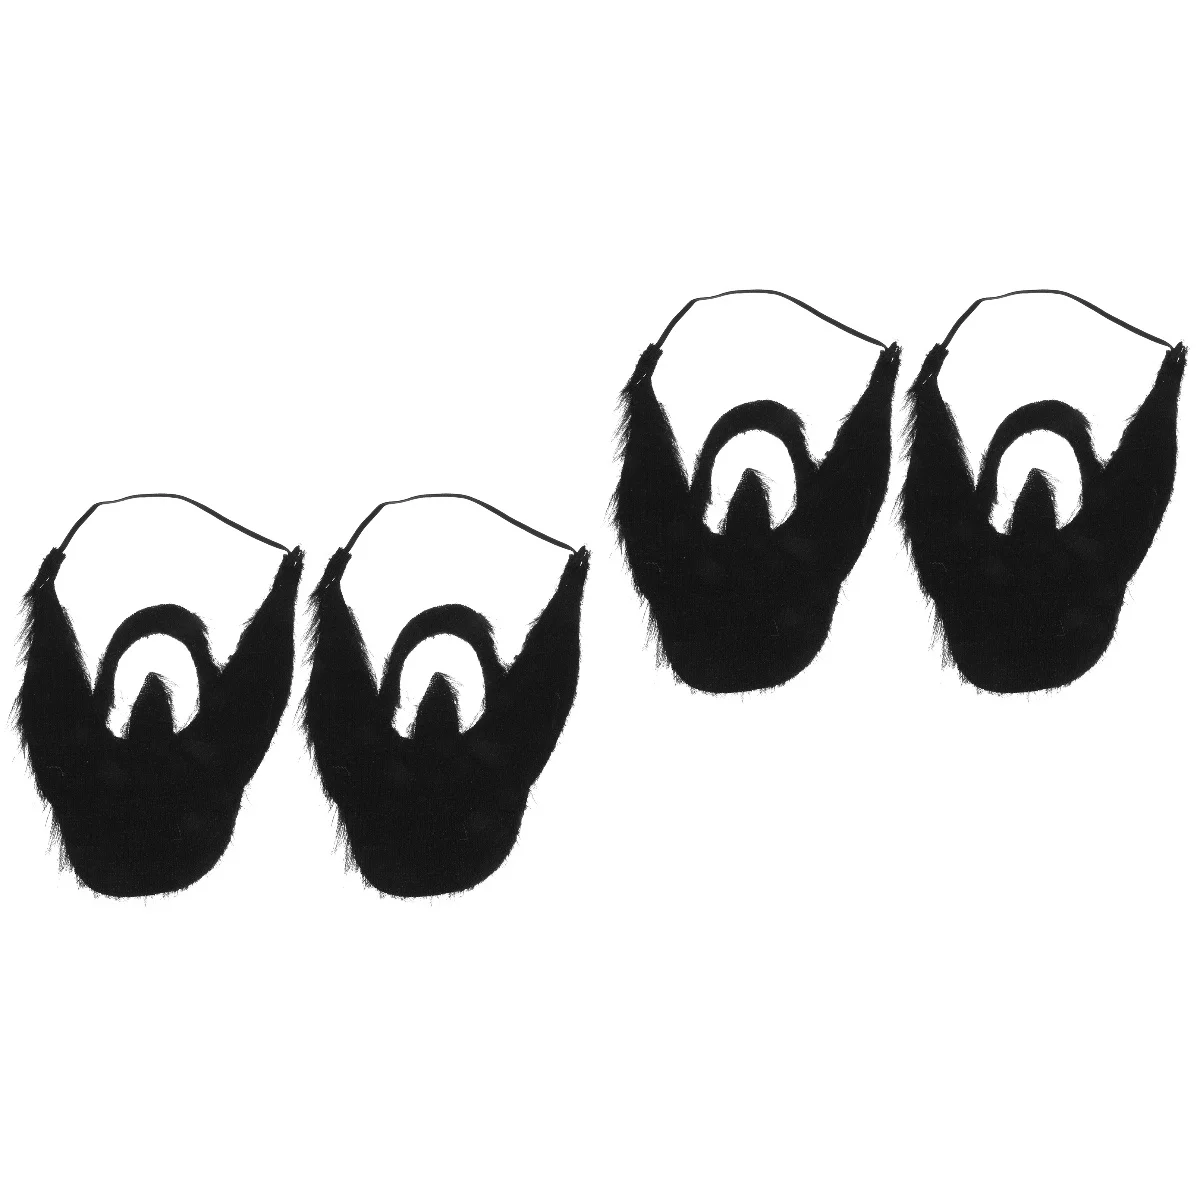 

4 шт. костюм на Хэллоуин реквизит венчик искусственные Усы бороды на Хэллоуин забавная борода с эластичной веревкой Косплей вечеринка костюм реквизит